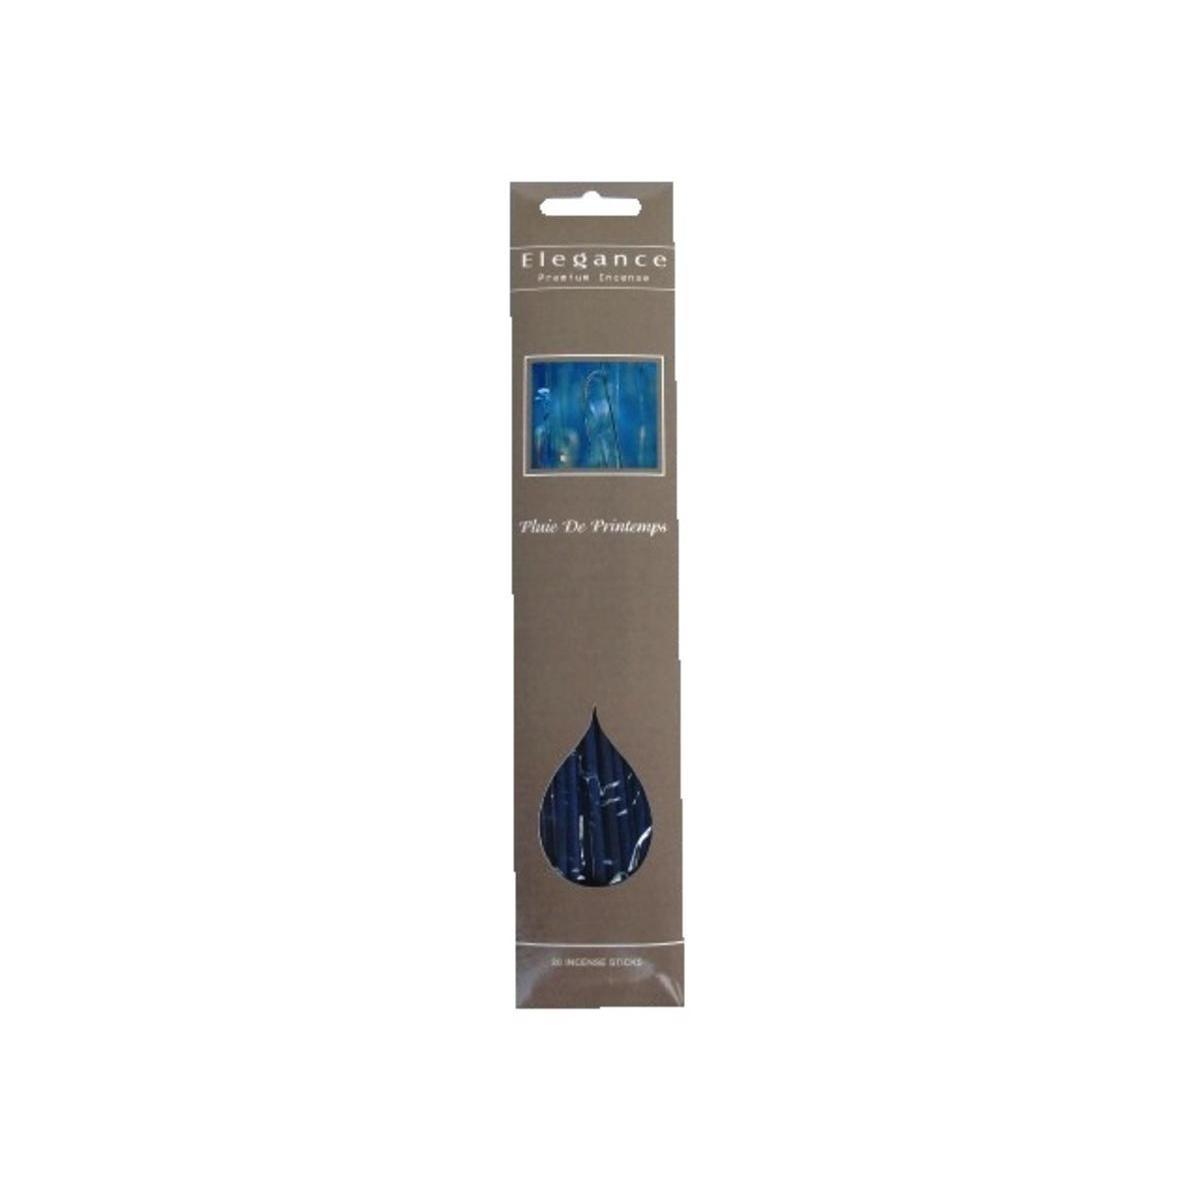 20 bâtonnets d'encens parfum pluie de Printemps - ø 1.5 x L 30 cm - Gris, bleu